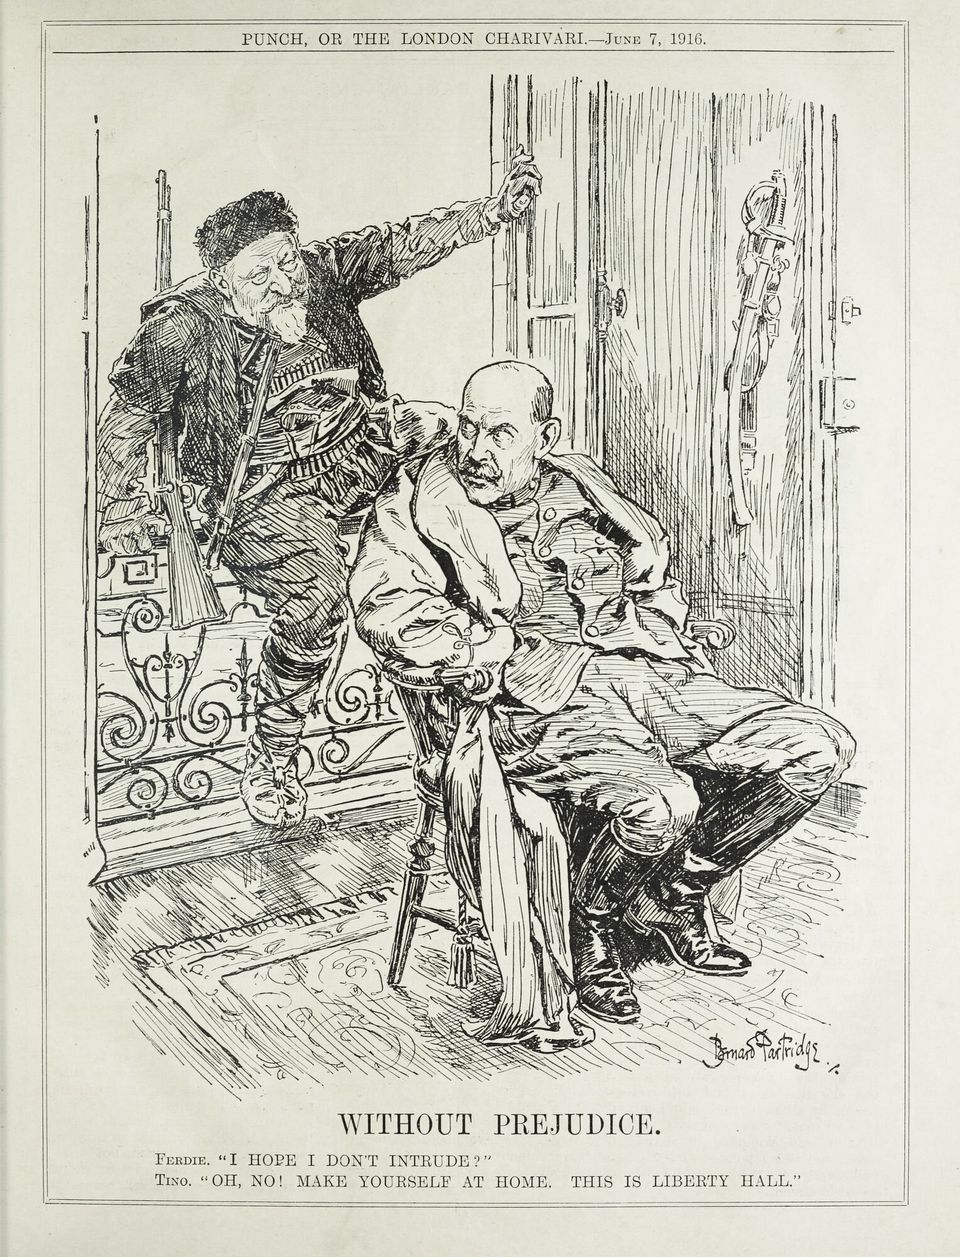 Σατυρικό καρτούν 7 Ιουνίου 1916 μετά την εισβολή των βουλγαρικών δυνάμεων στην Ανατολική Μακεδονία. Ο Βασιλιάς Κωνσταντίνος βλέπει τον Βούλγαρο ομόλογό του να μπαίνει από το παράθυρο χωρίς να αντιδρά.